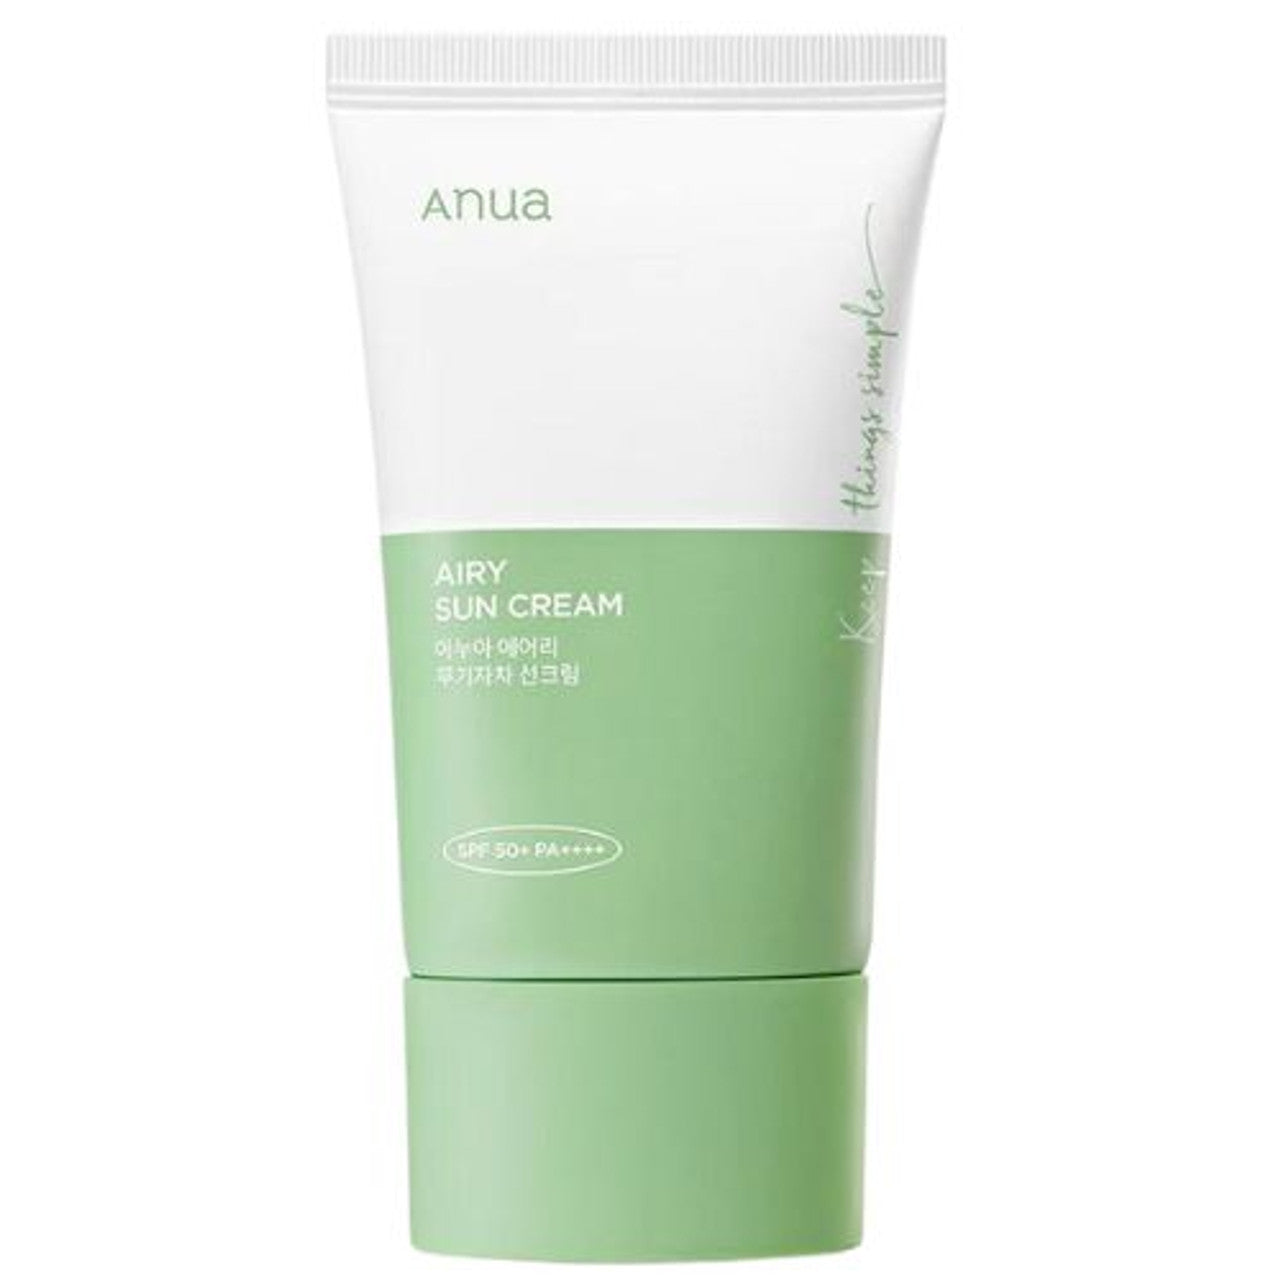 ANUA - Airy Sun Cream